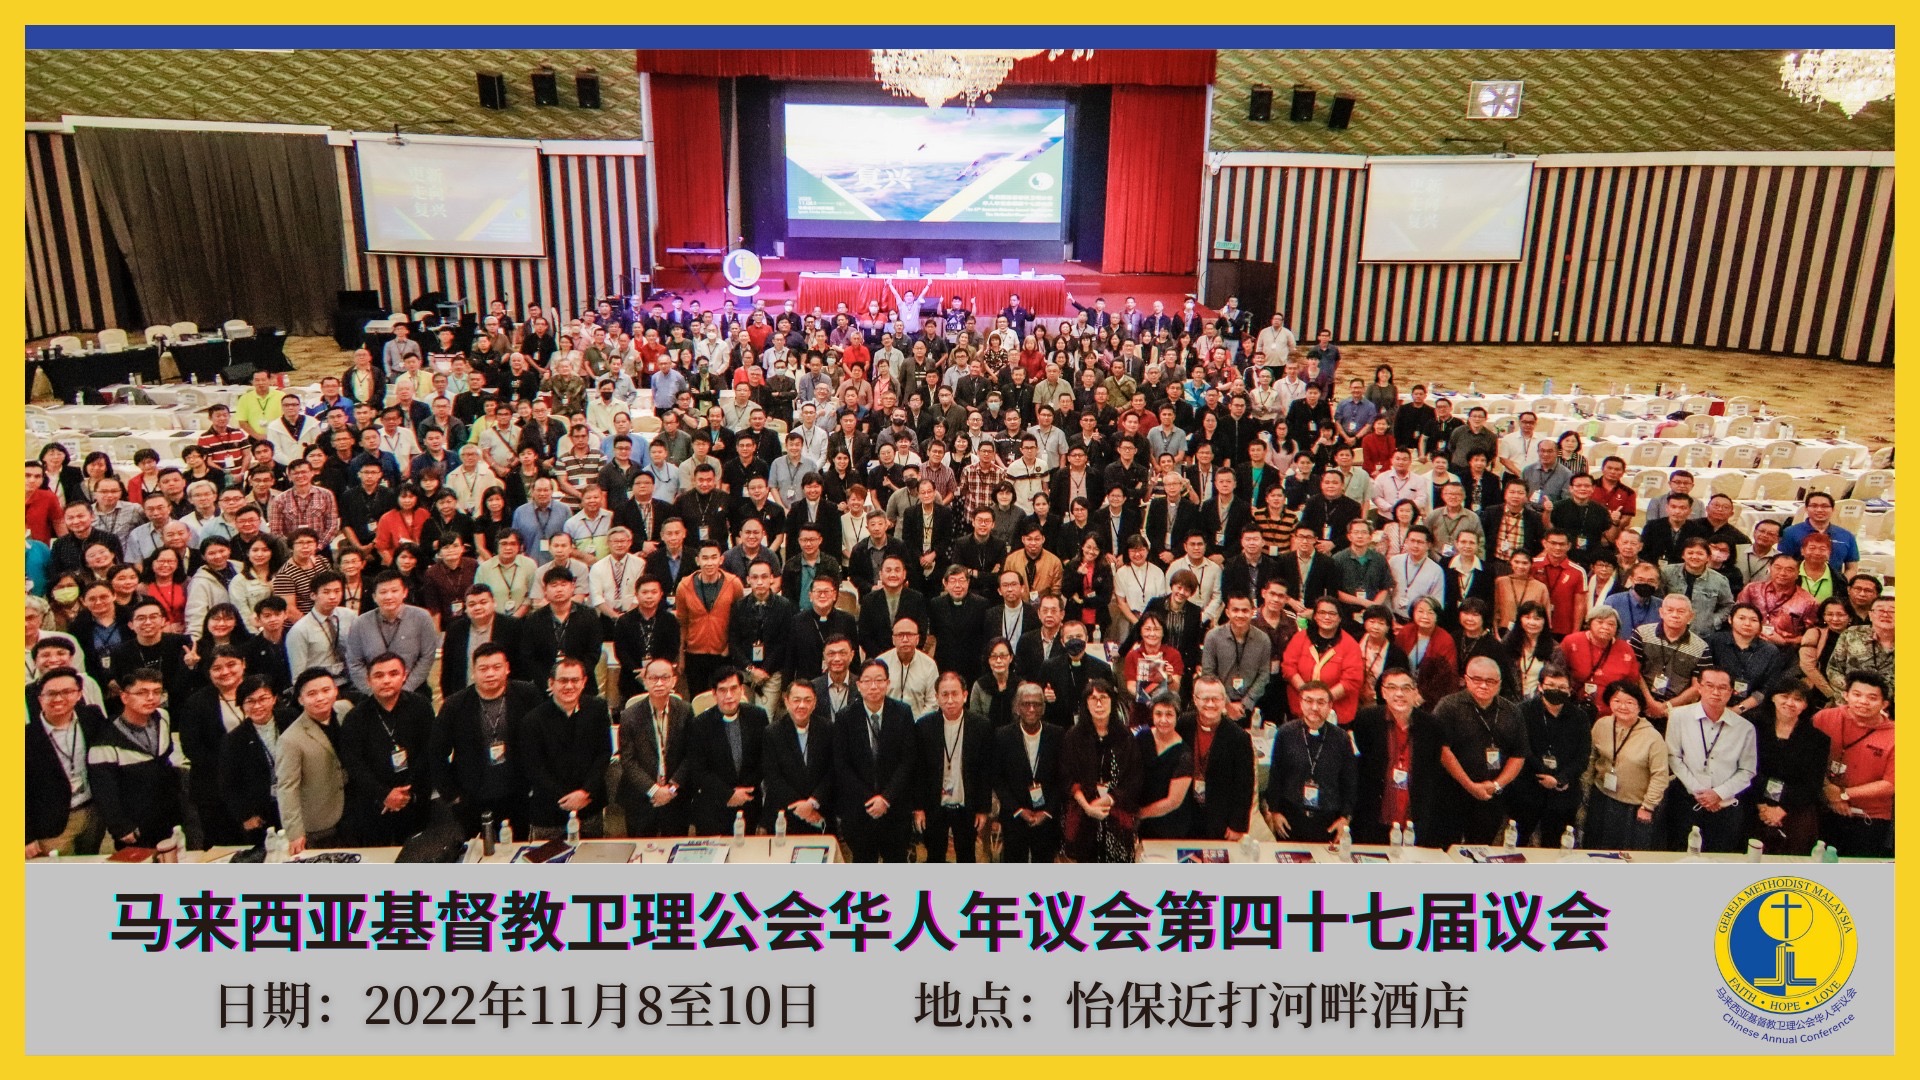 全體合影(圖/馬來西亞基督教衛理公會華人年議會臉書)